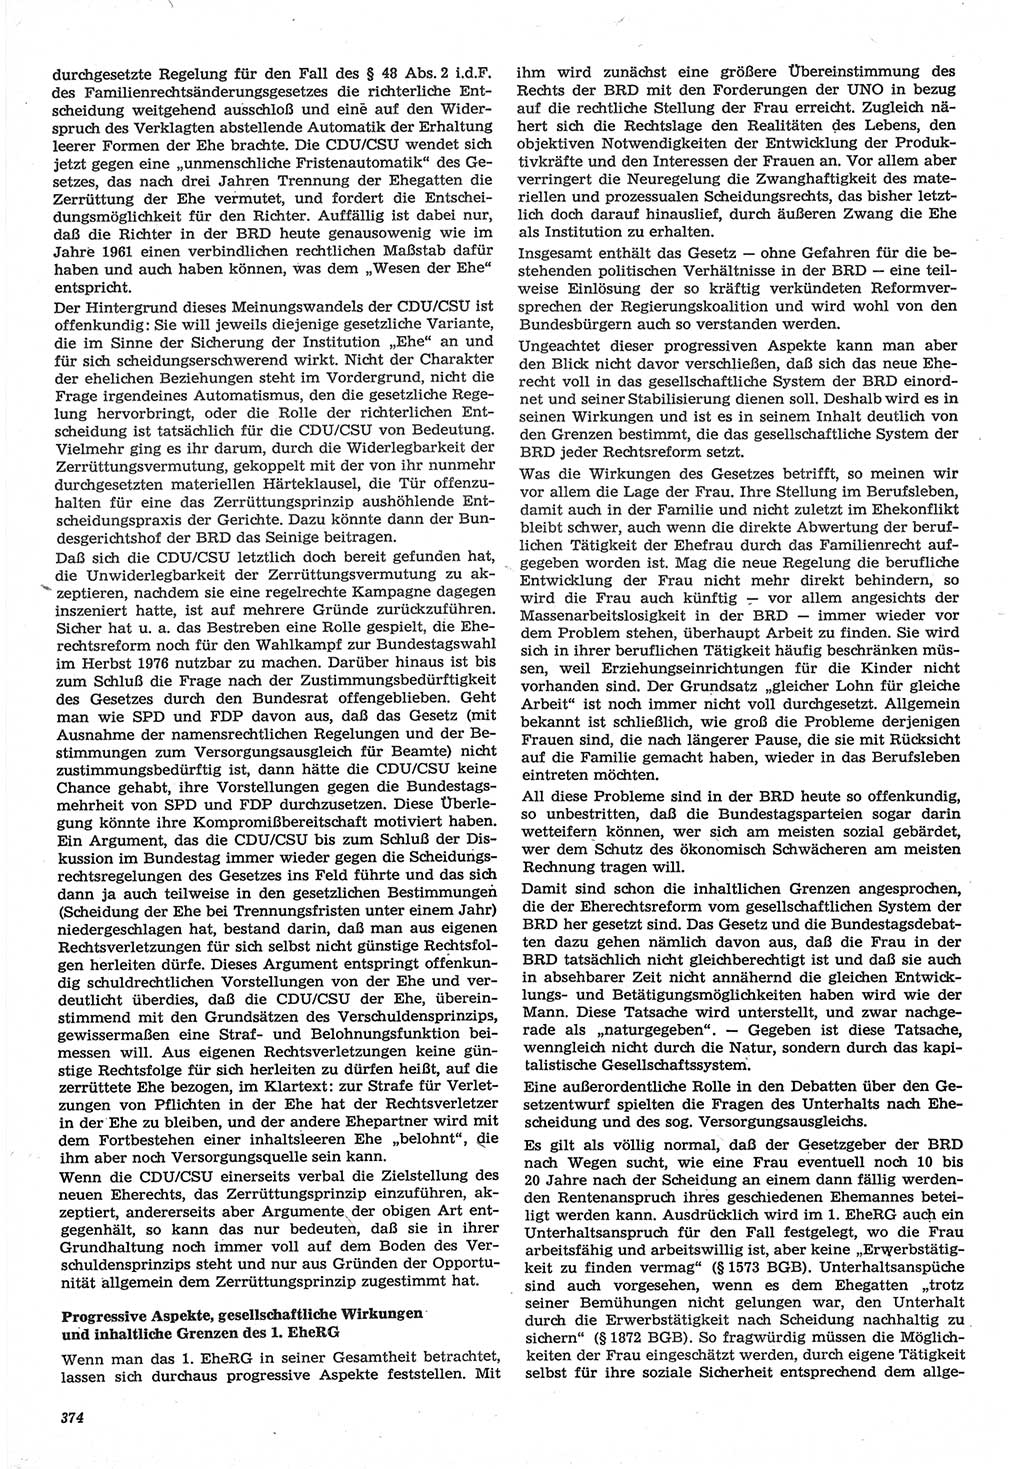 Neue Justiz (NJ), Zeitschrift für Recht und Rechtswissenschaft-Zeitschrift, sozialistisches Recht und Gesetzlichkeit, 31. Jahrgang 1977, Seite 374 (NJ DDR 1977, S. 374)